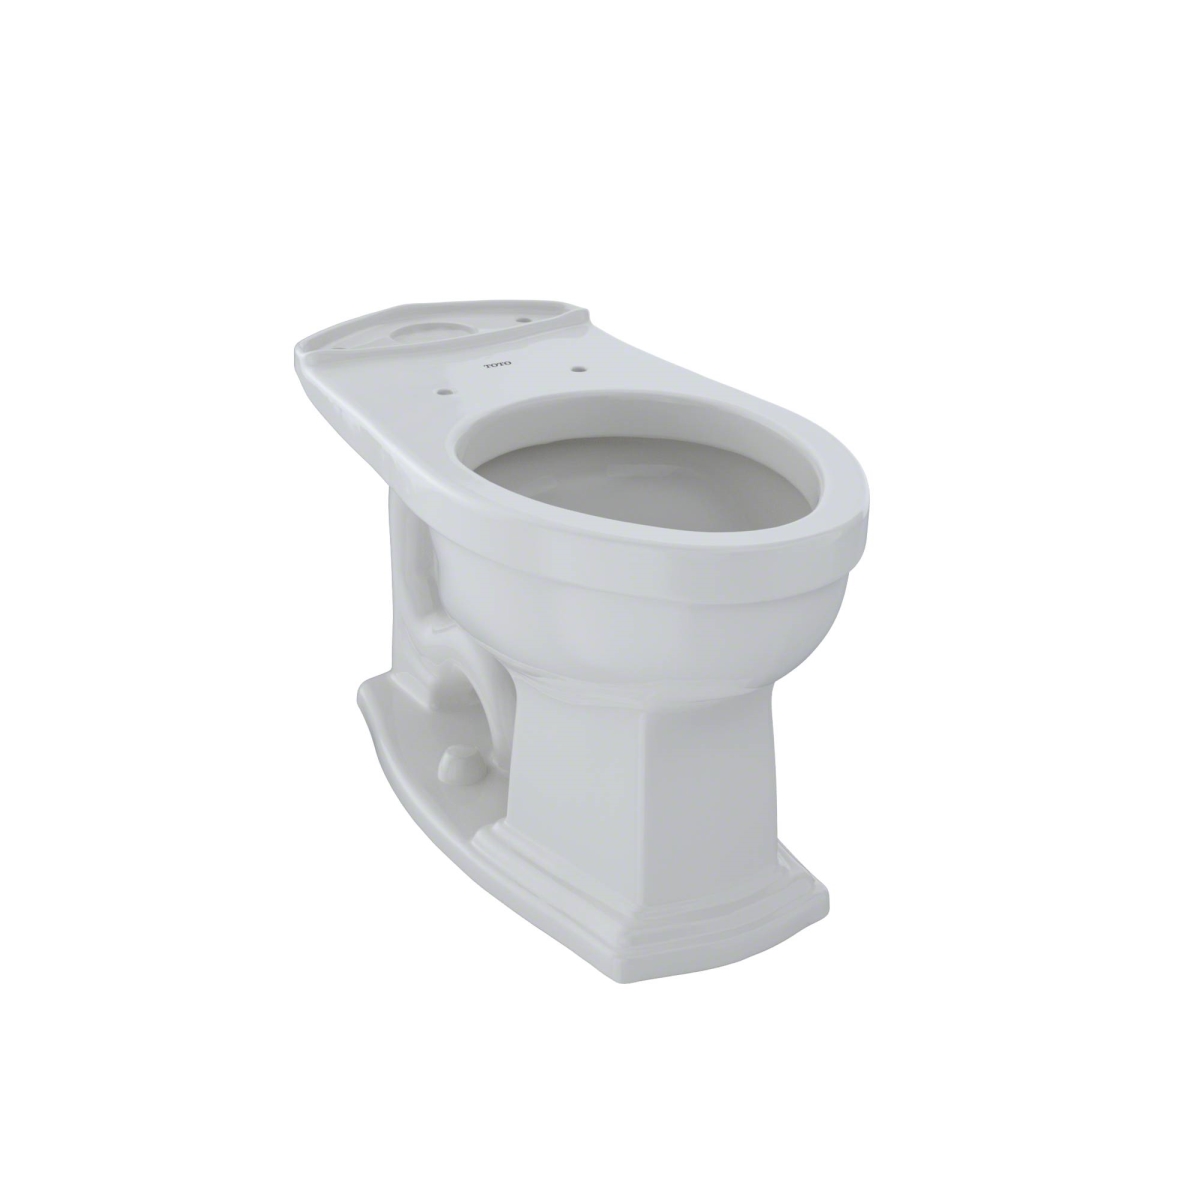 C784ef-11 Clayton Toilet Bowl, Colonial White